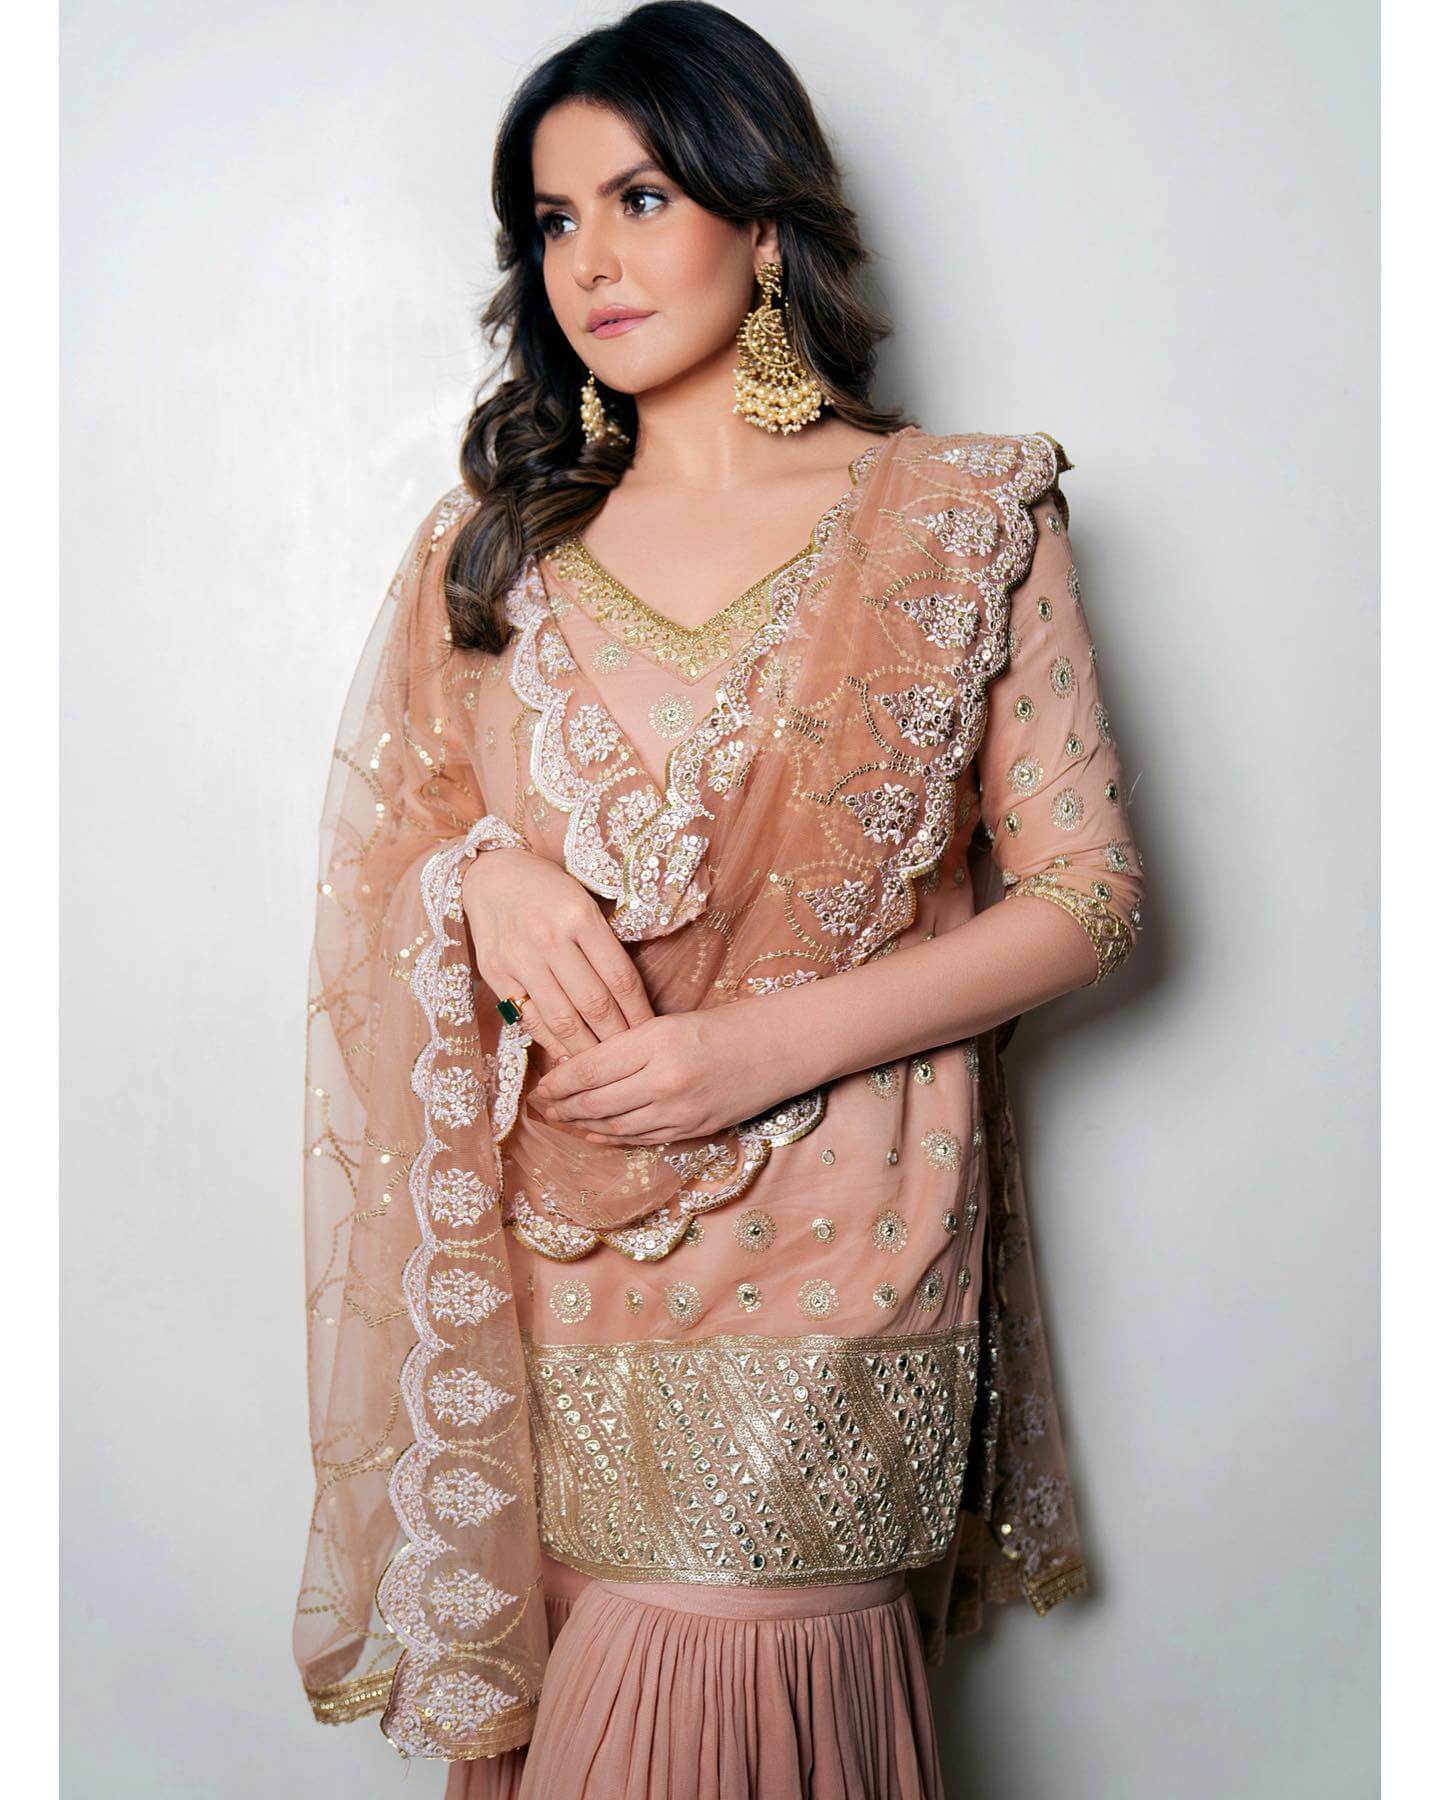 Actress Zareen Khan in stylish salwar